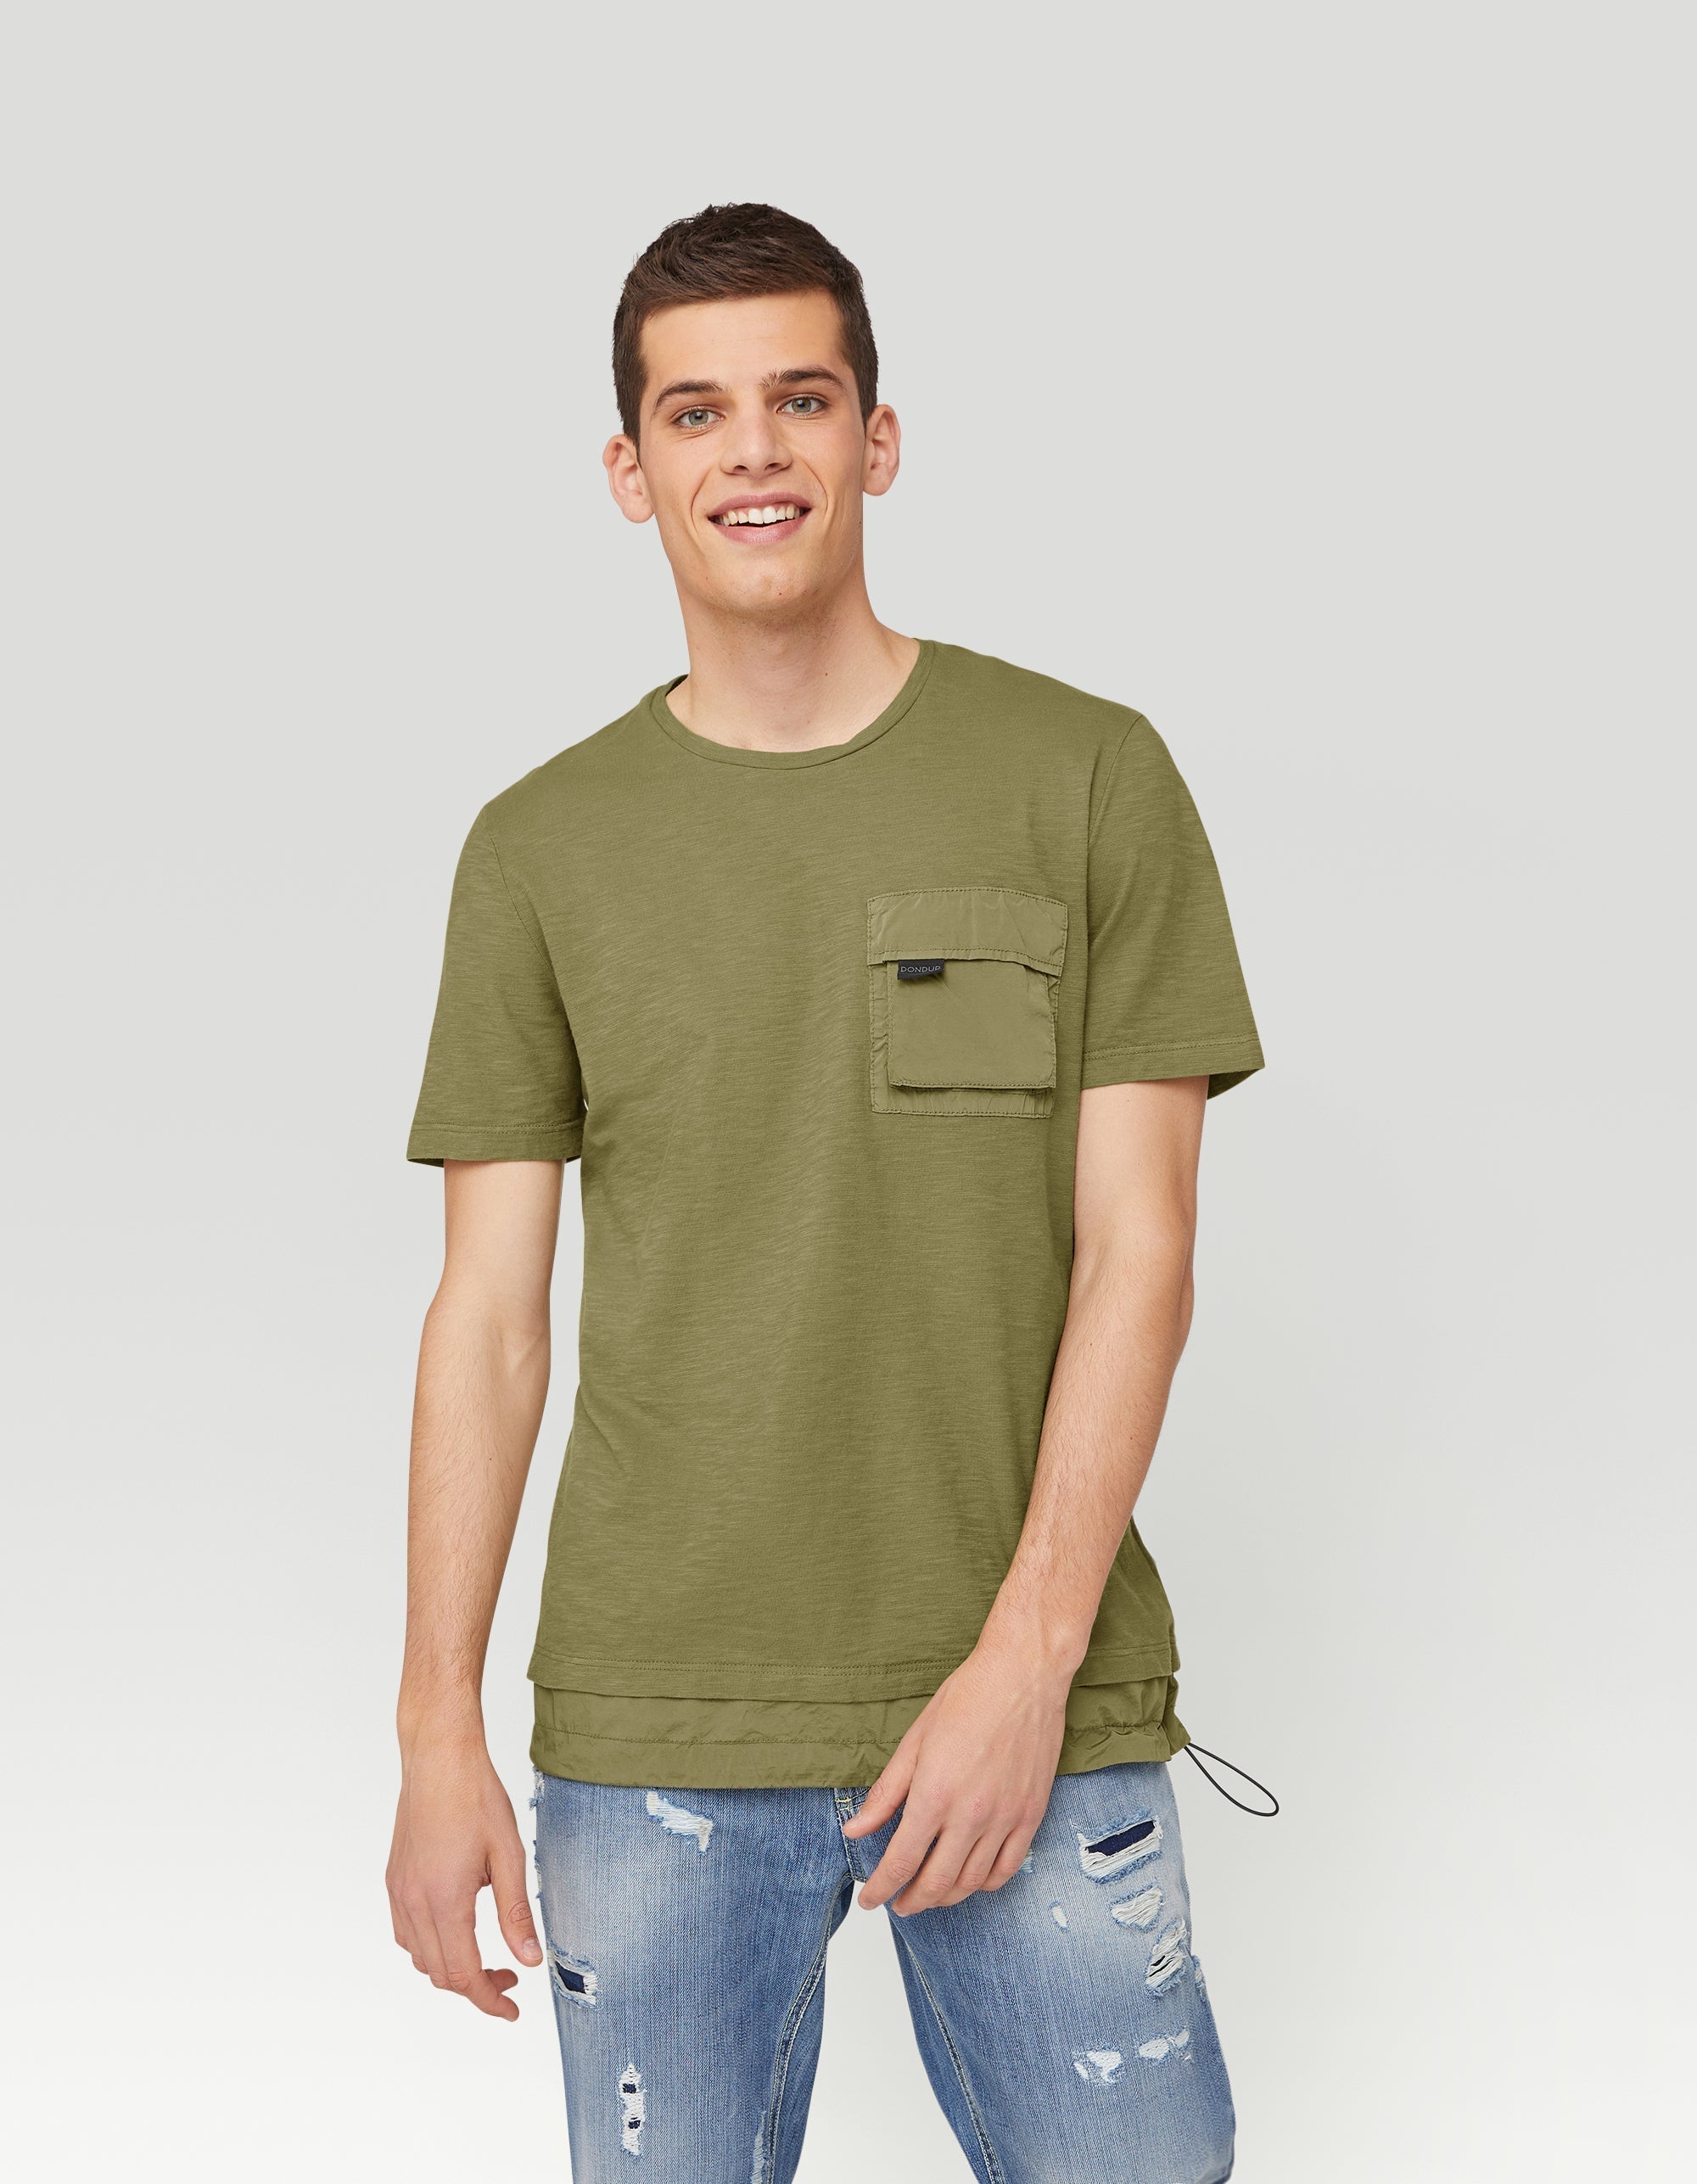 T-shirt jersey cotone fiammato verde